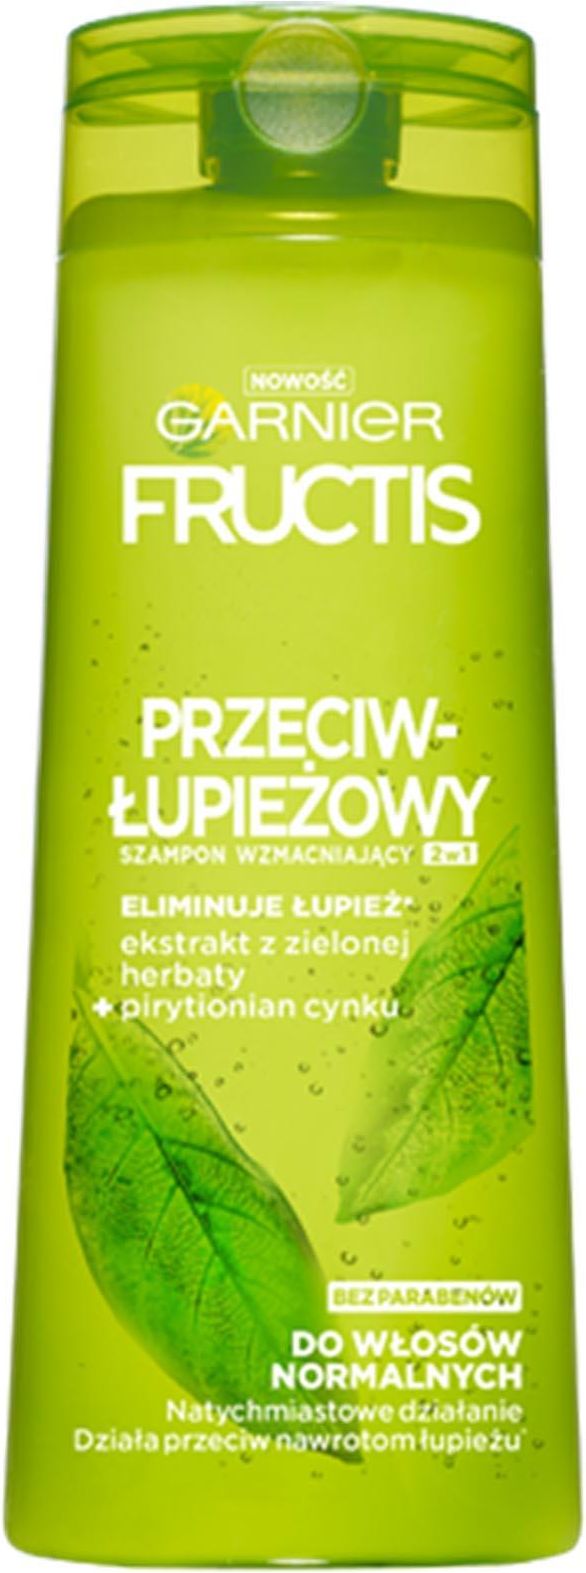 garnier fructis przeciwłupieżowy szampon wzmacniający 400ml